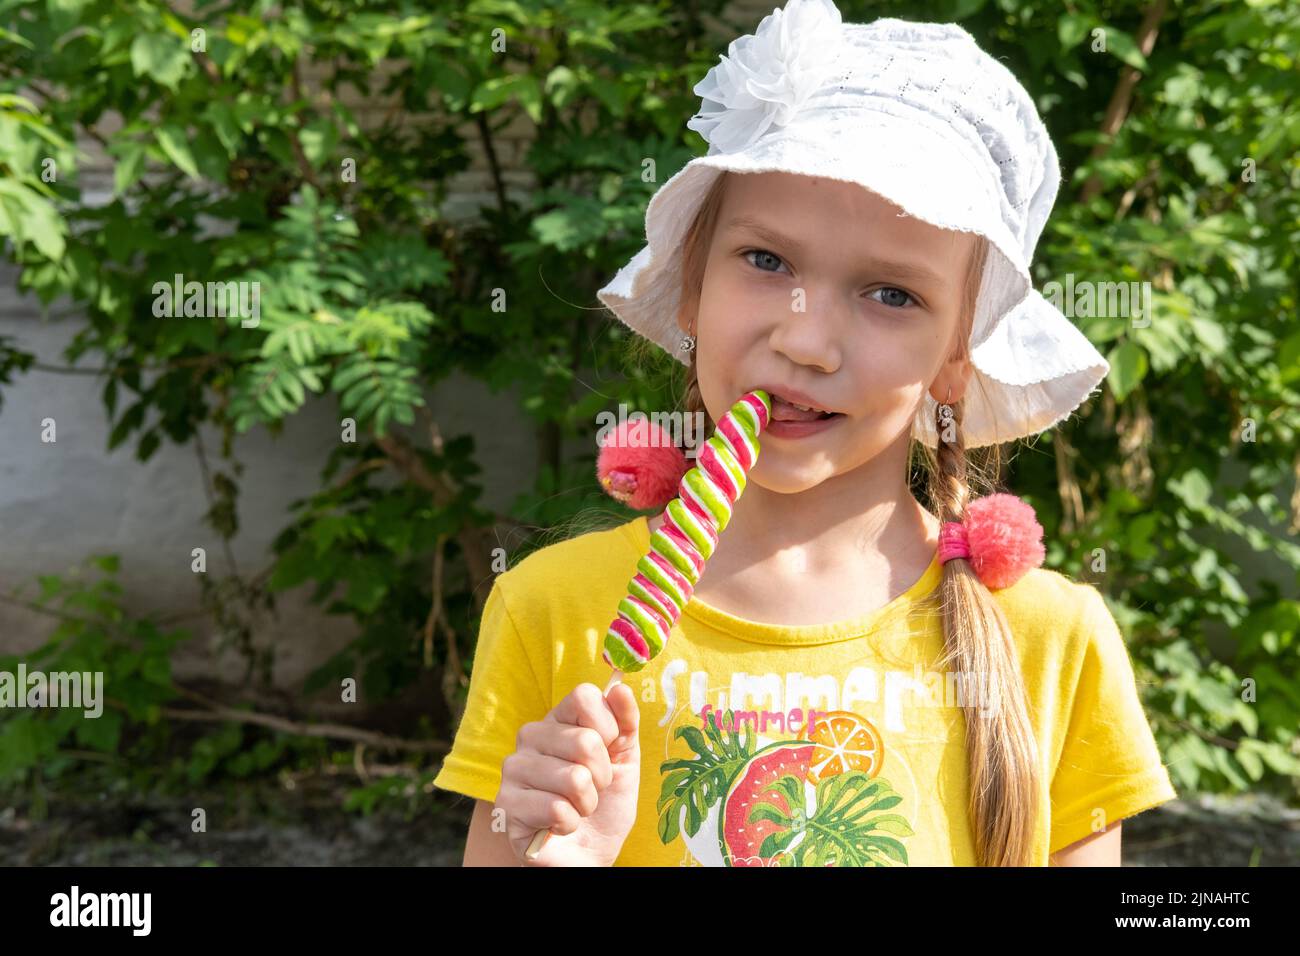 Una bonita chica con un sombrero blanco y un vestido amarillo lamiendo un colorido helado de caramelo sobre el fondo del follaje verde en el parque. horario de verano Foto de stock